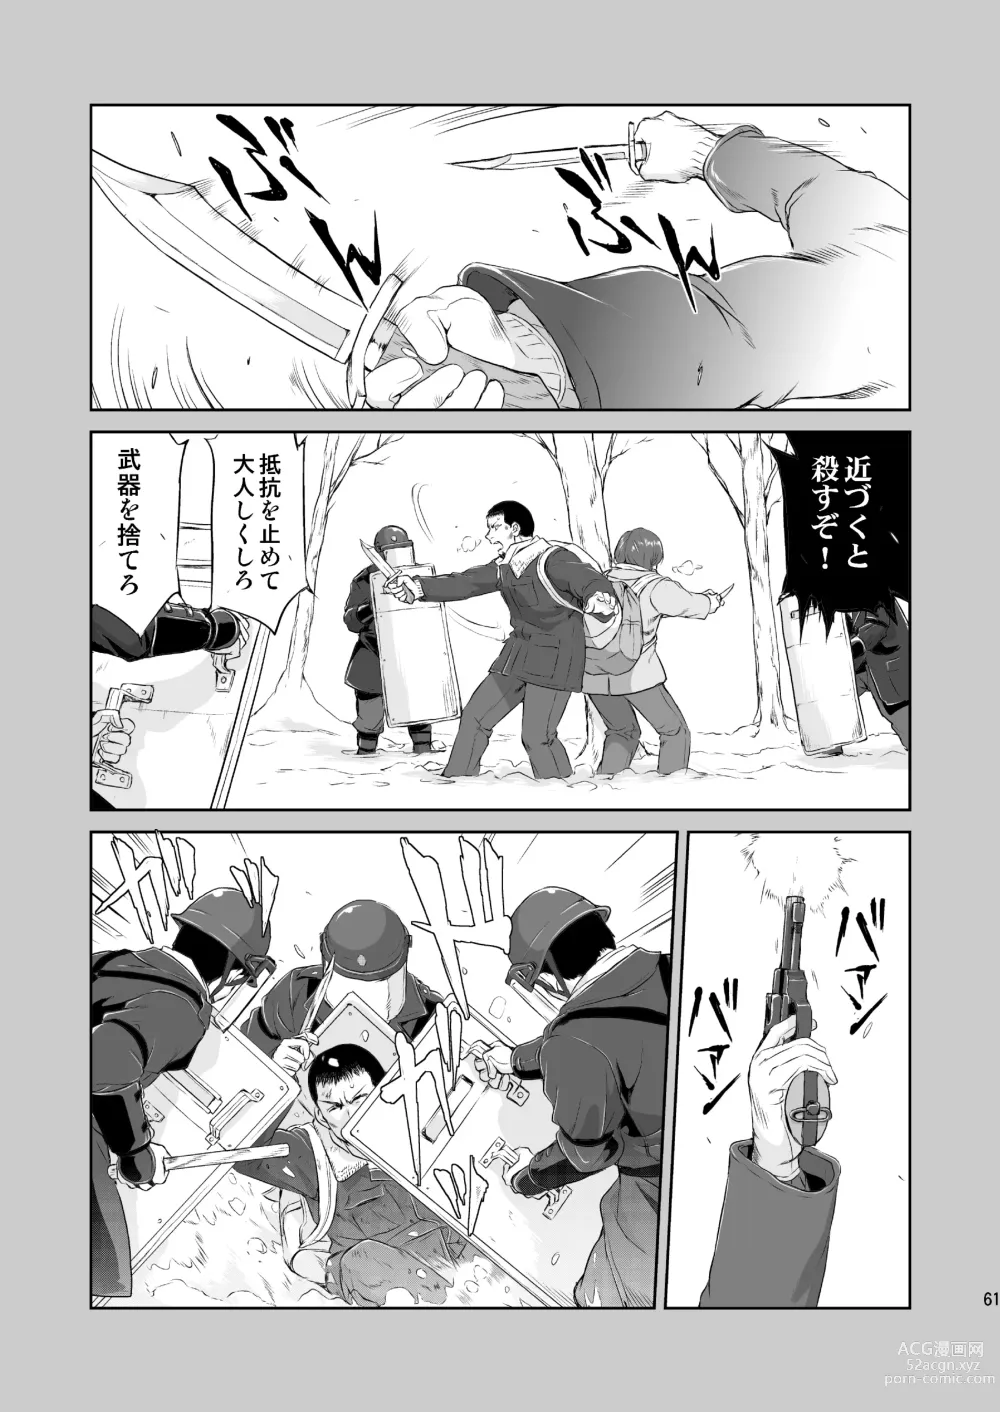 Page 61 of doujinshi Hikari no Ame